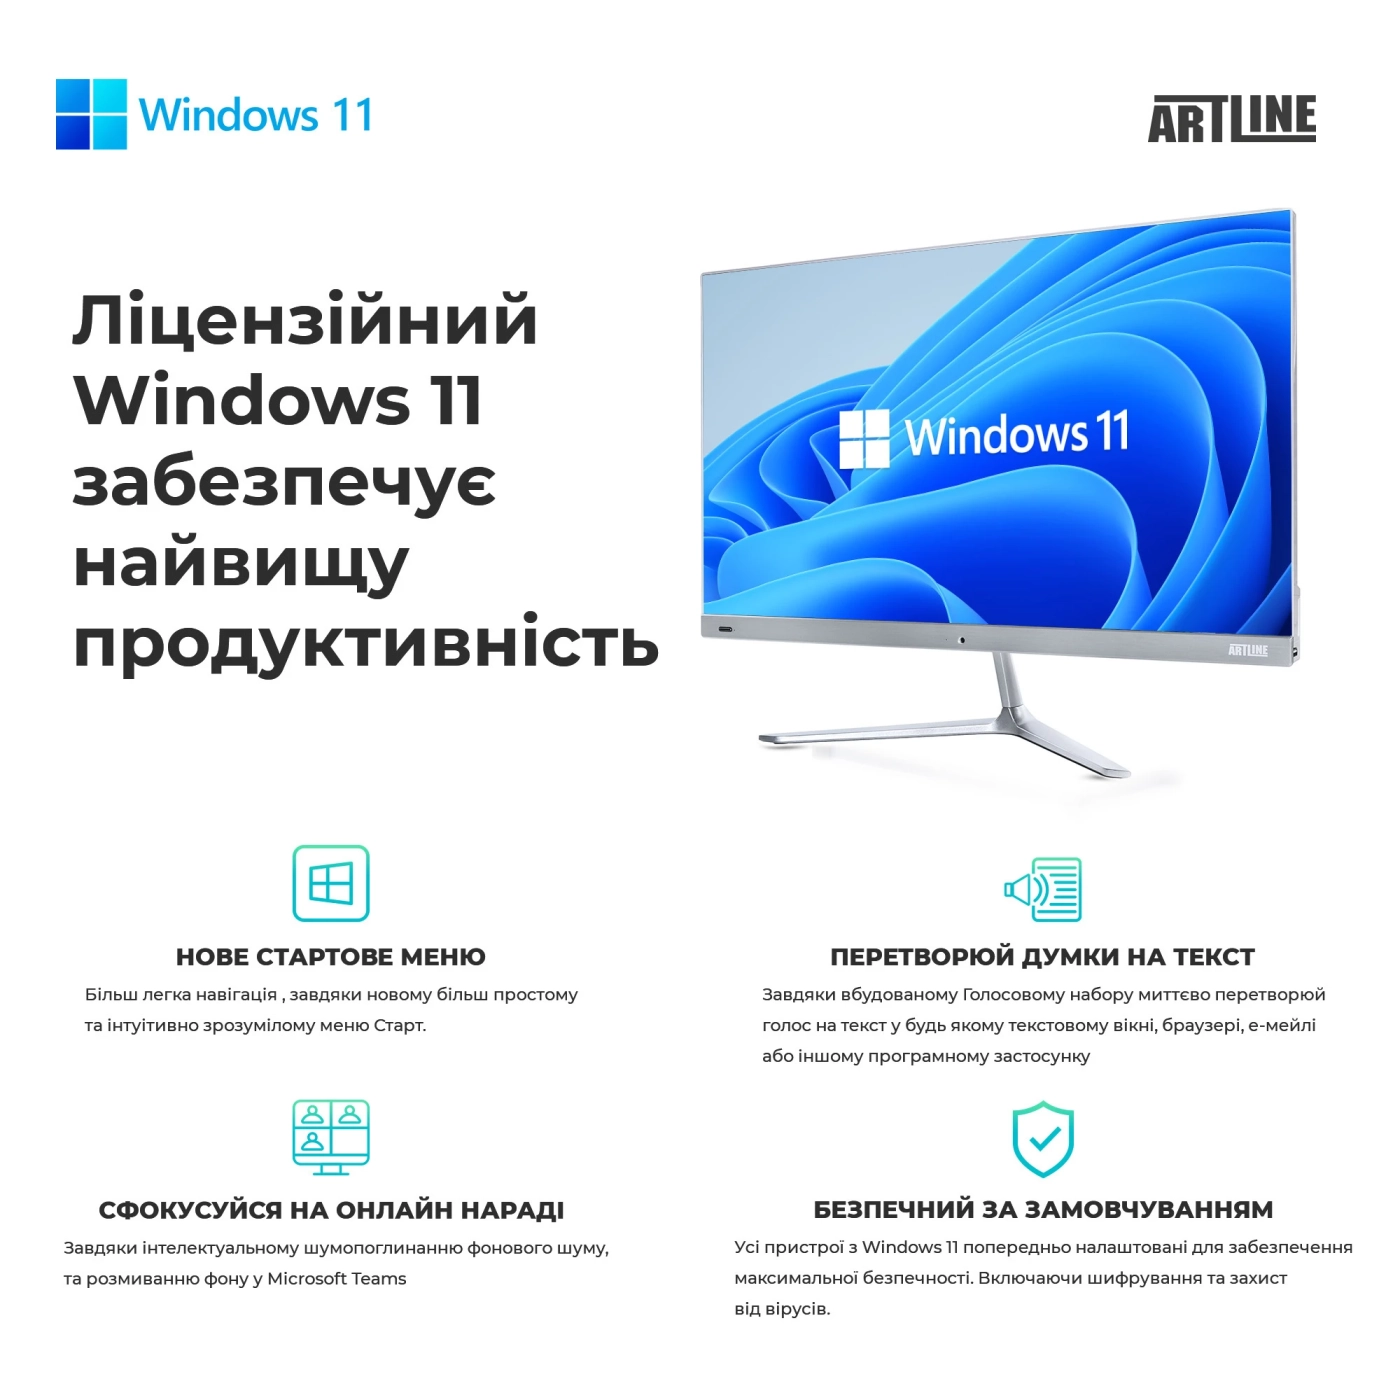 Купить Рабочая станция ARTLINE WorkStation W96 Windows 11 Pro (W96v40Win) - фото 9